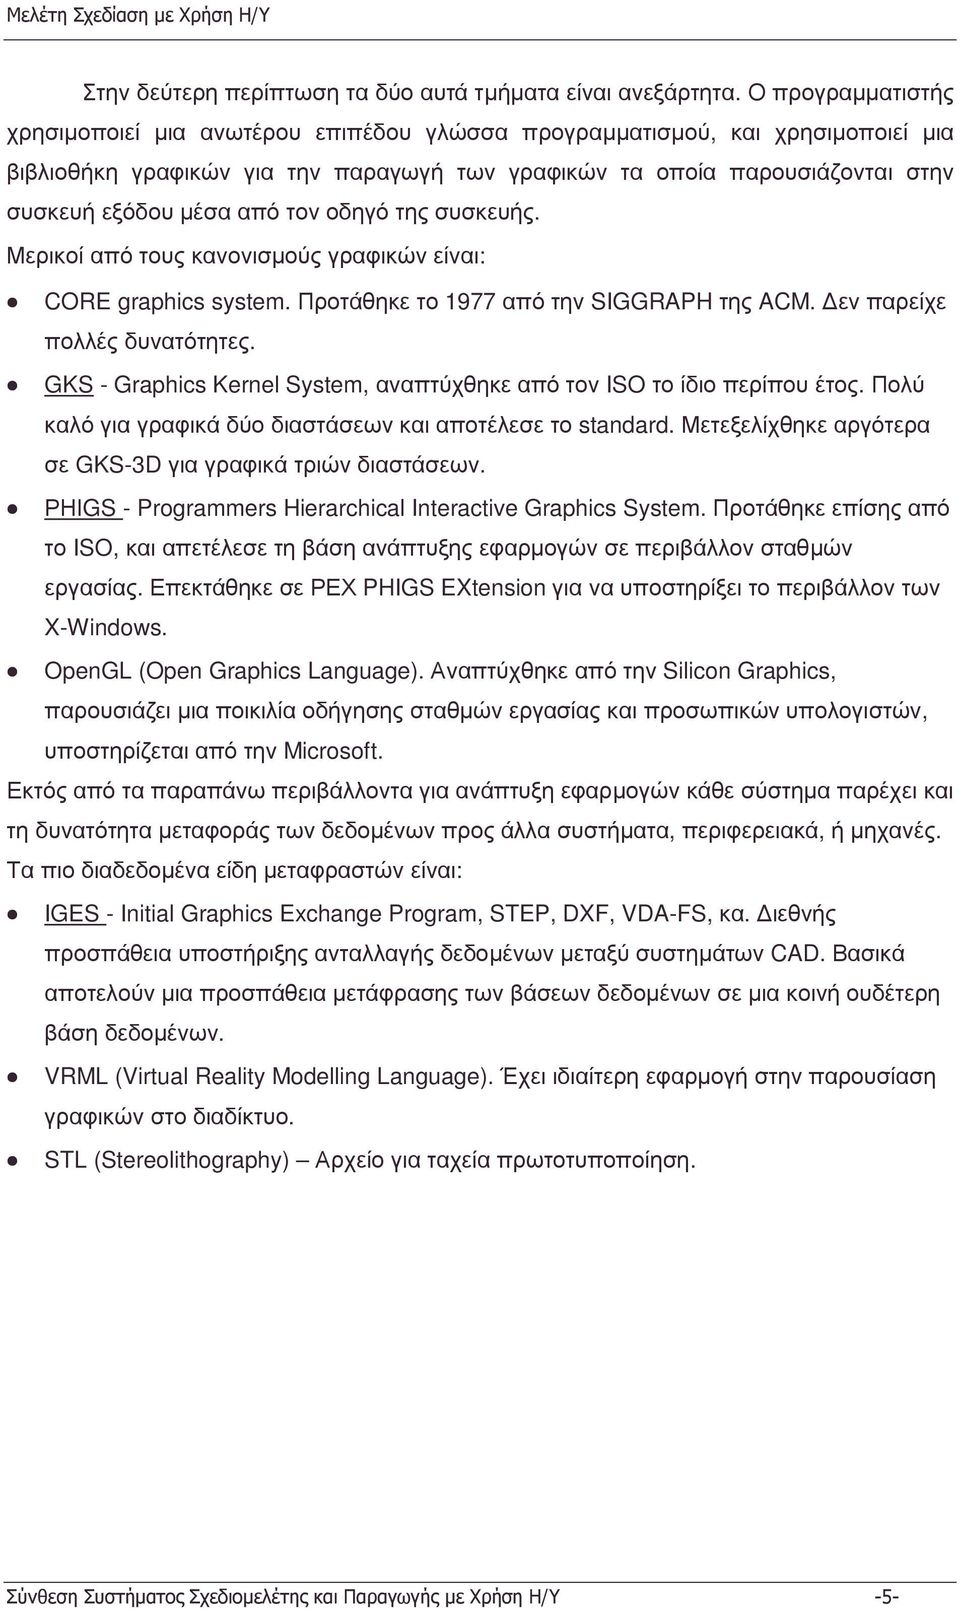 από τον οδηγό της συσκευής. Μερικοί από τους κανονισµούς γραφικών είναι: CORE graphics system. Προτάθηκε το 977 από την SIGGRAPH της ACM. εν παρείχε πολλές δυνατότητες.